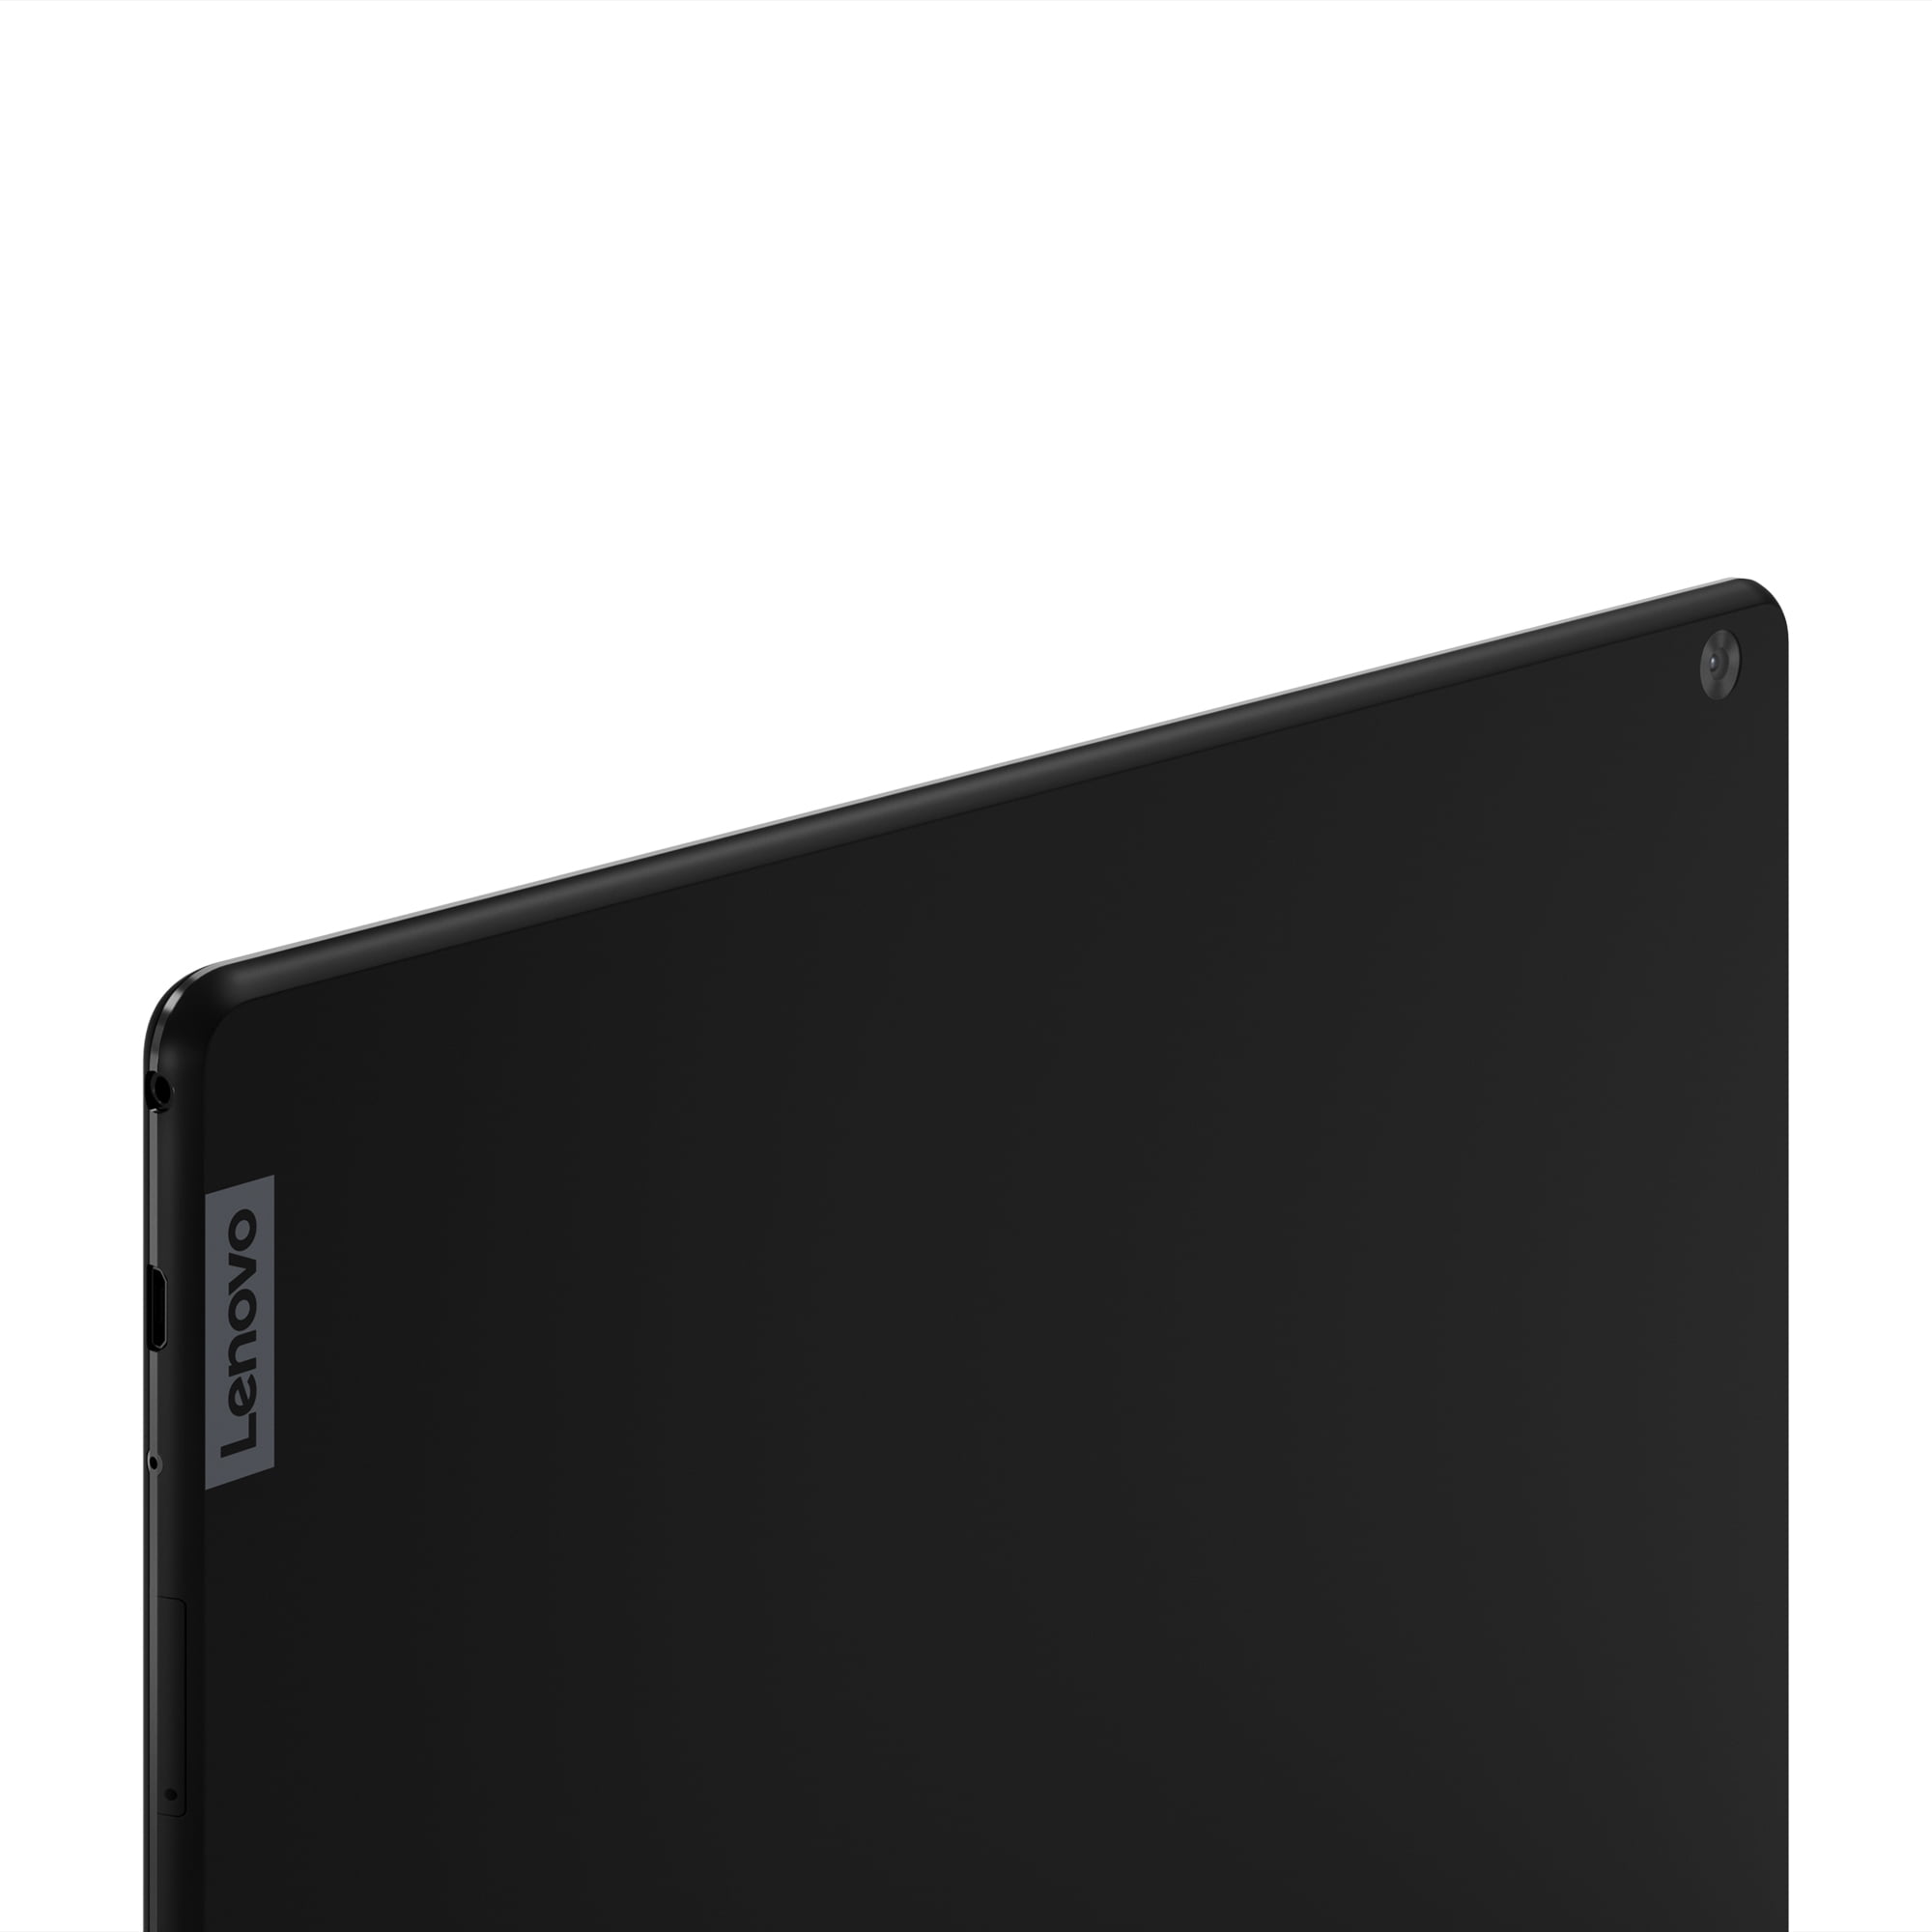 Lenovo Tab M10 10.1” (Android tablet) 16GB - Walmart.com